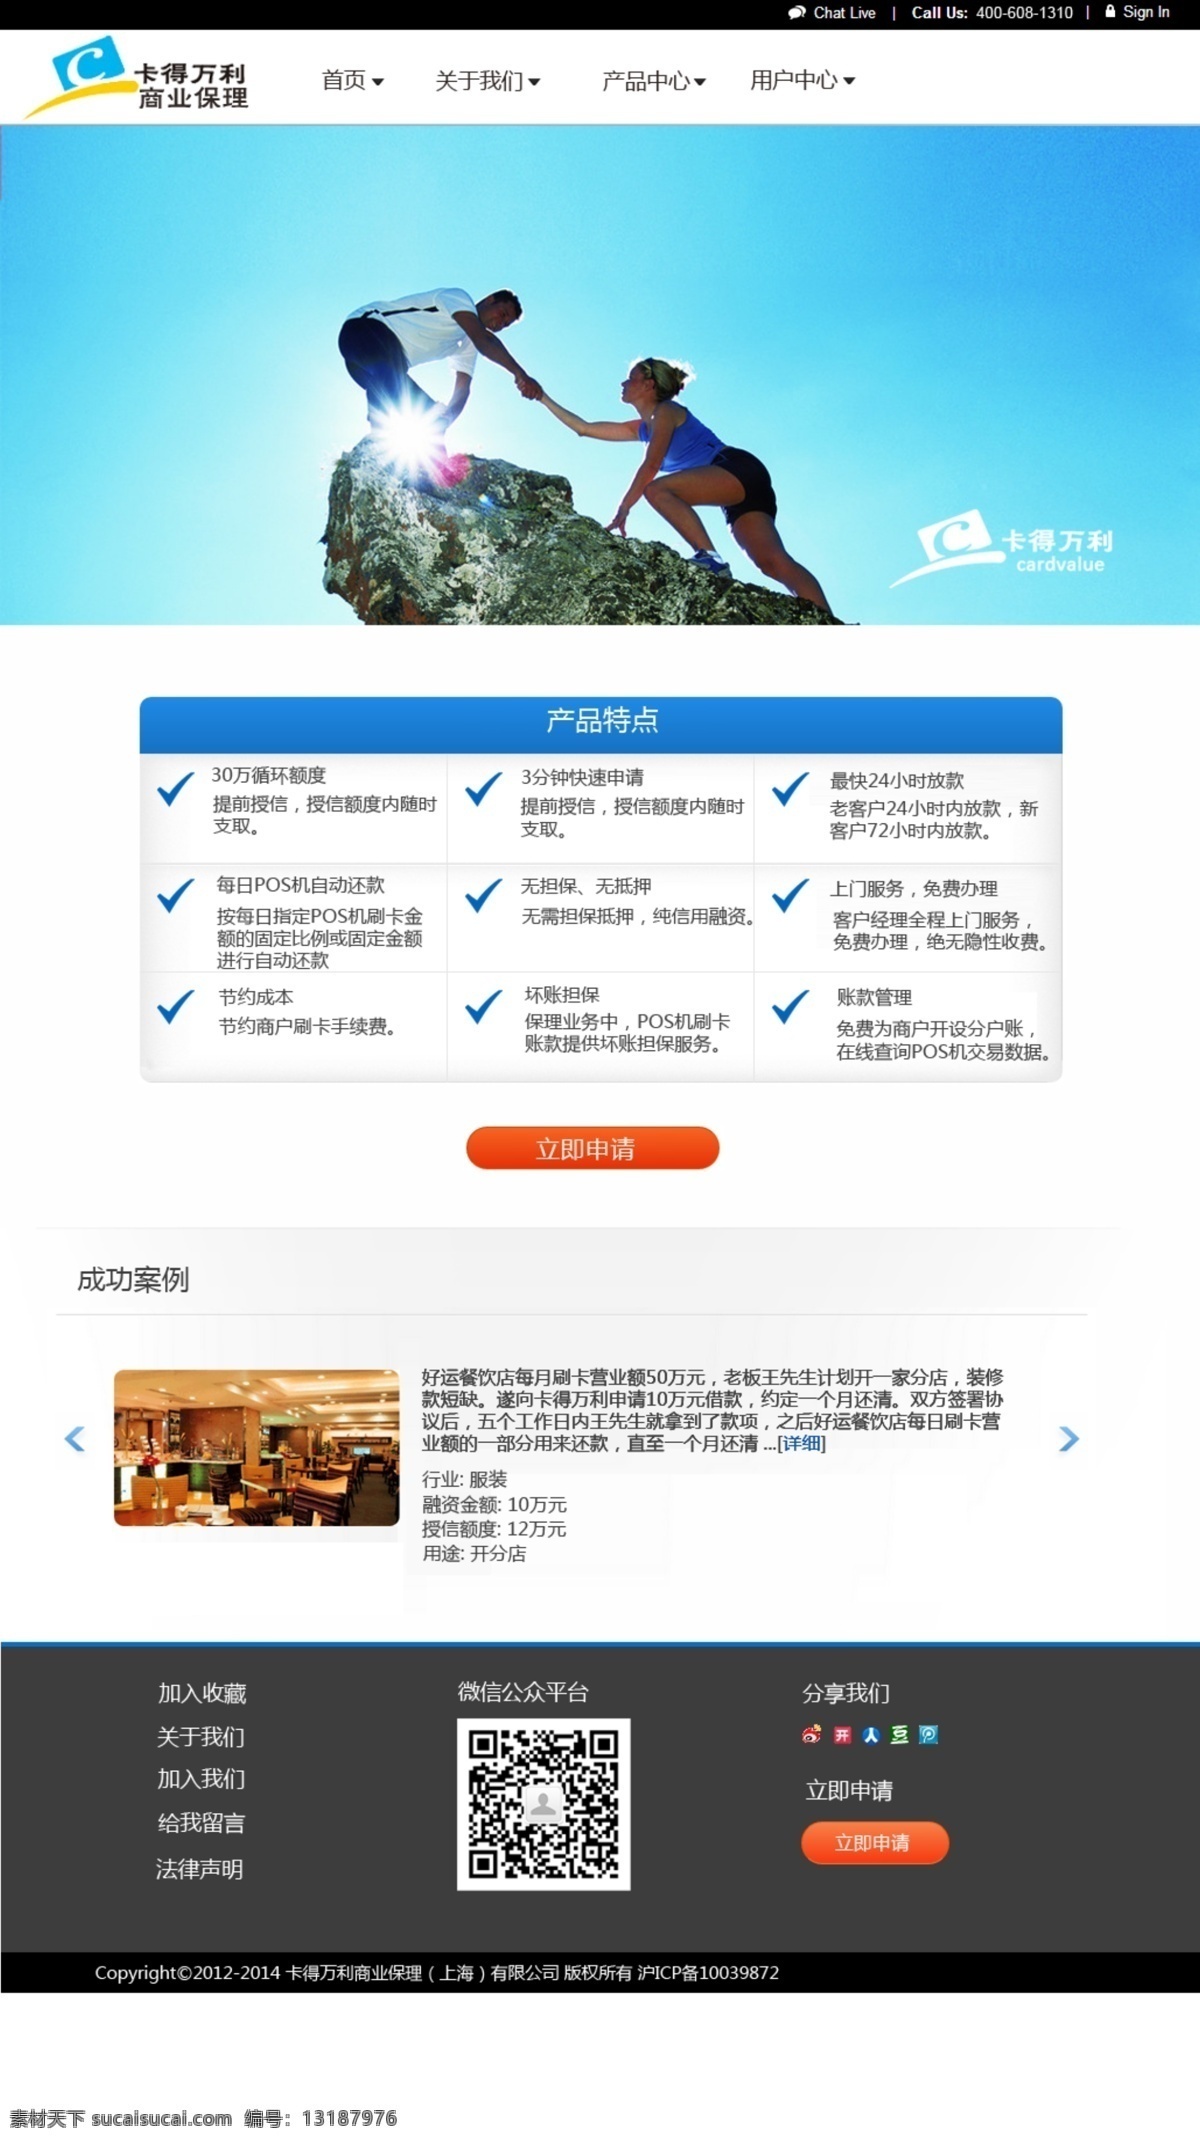 官网免费下载 中文模板 小贷 官网 responsive 蓝色主色 橙色高亮 web 界面设计 网页素材 其他网页素材